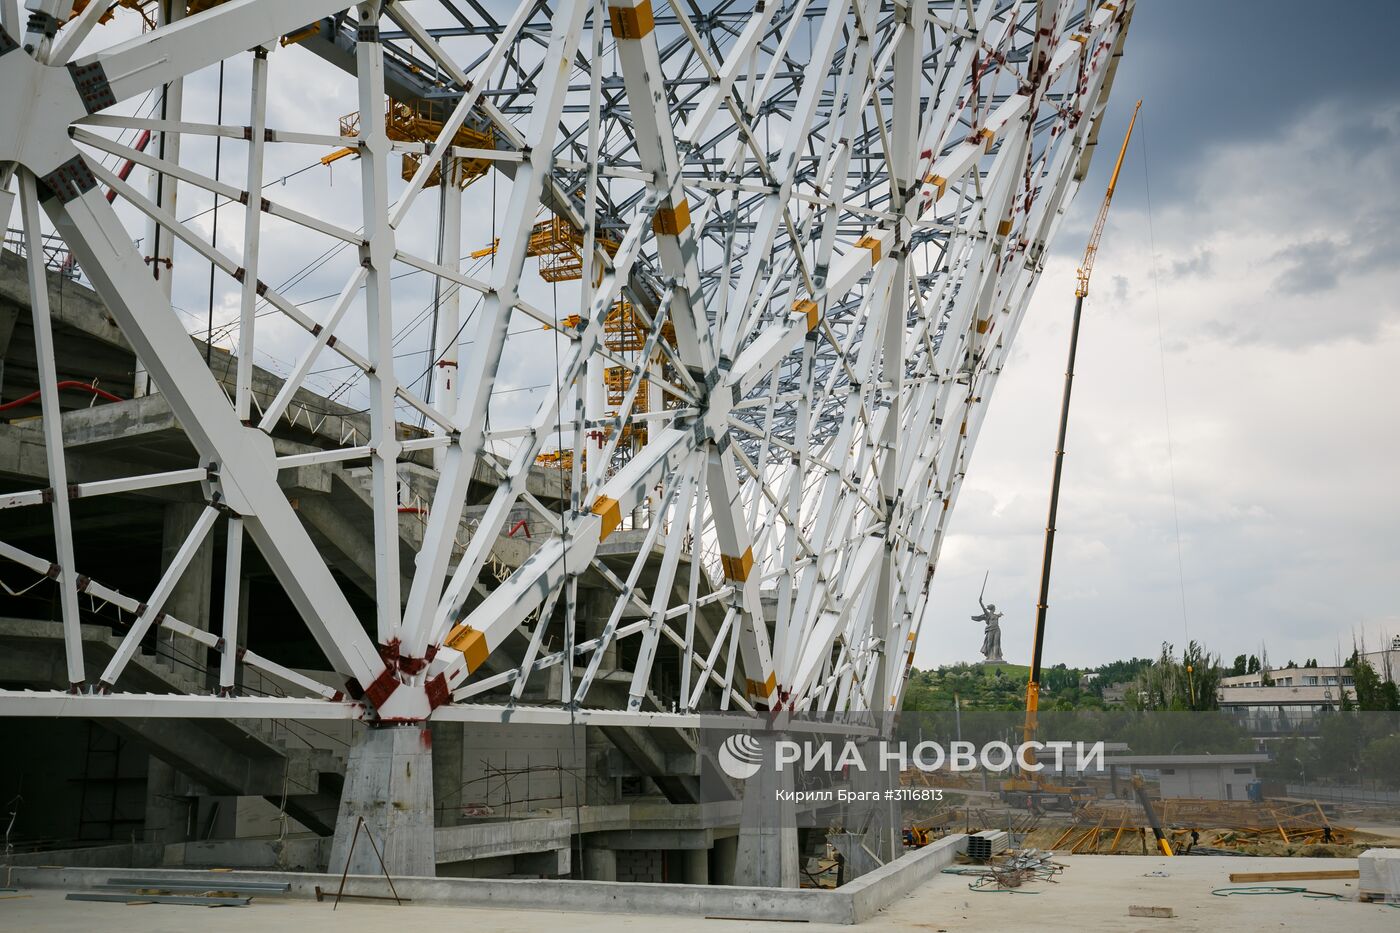 Строительство стадиона "Волгоград Арена" в Волгограде к чемпионату мира по футболу 2018 года.